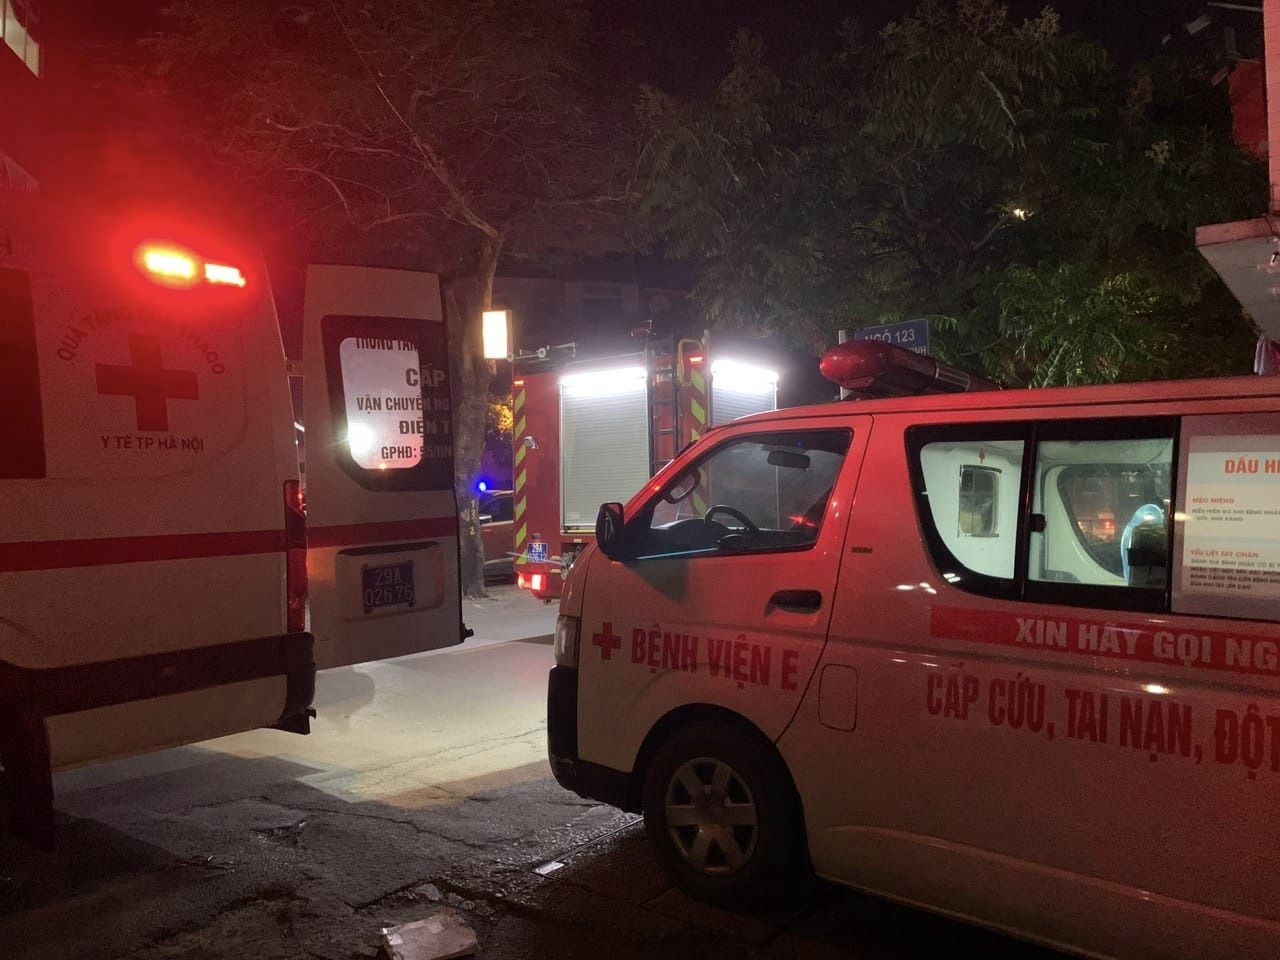 Ngay trong đêm, các bệnh viện trung ương và Hà Nội cũng được điều động cấp cứu, chở các bệnh nhân, thi thể nạn nhân rời khỏi hiện trường (Ảnh: Bệnh viện E)